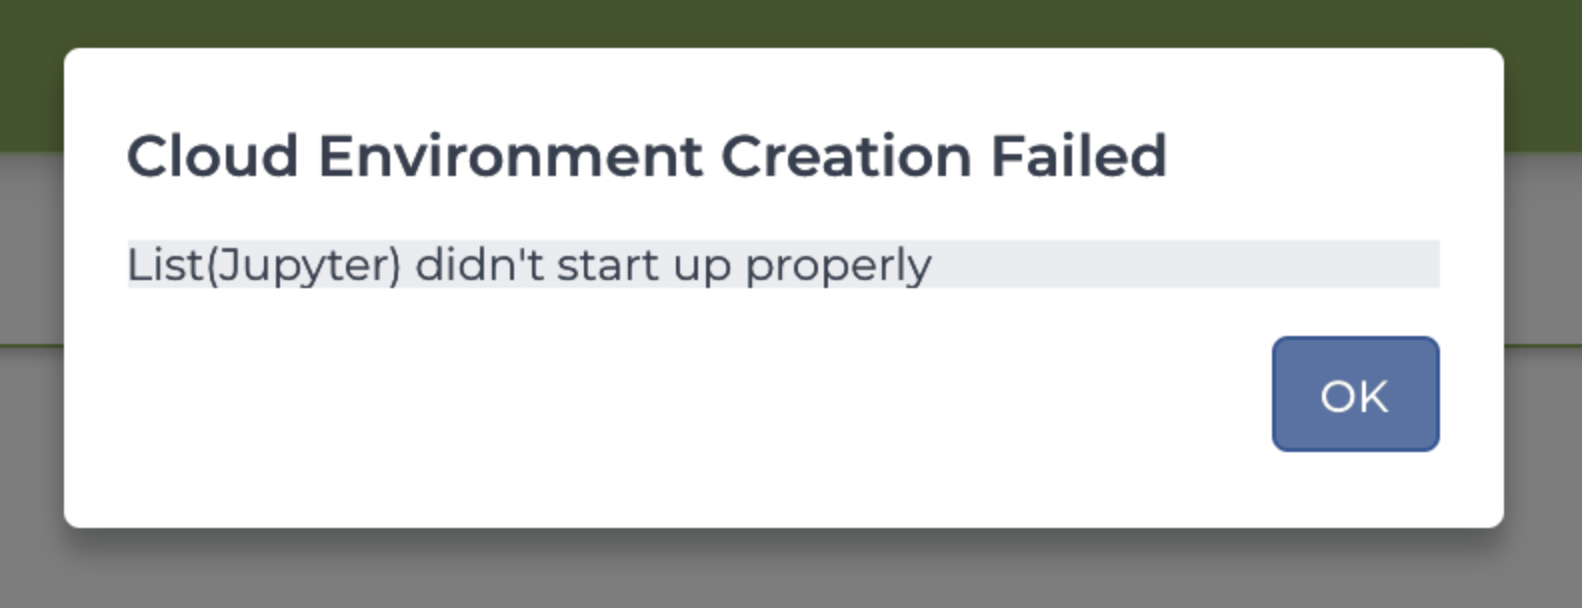 Screenshot of a Cloud Environment Creation Failed error, showing 'List(Jupyter) didn't start up properly.'